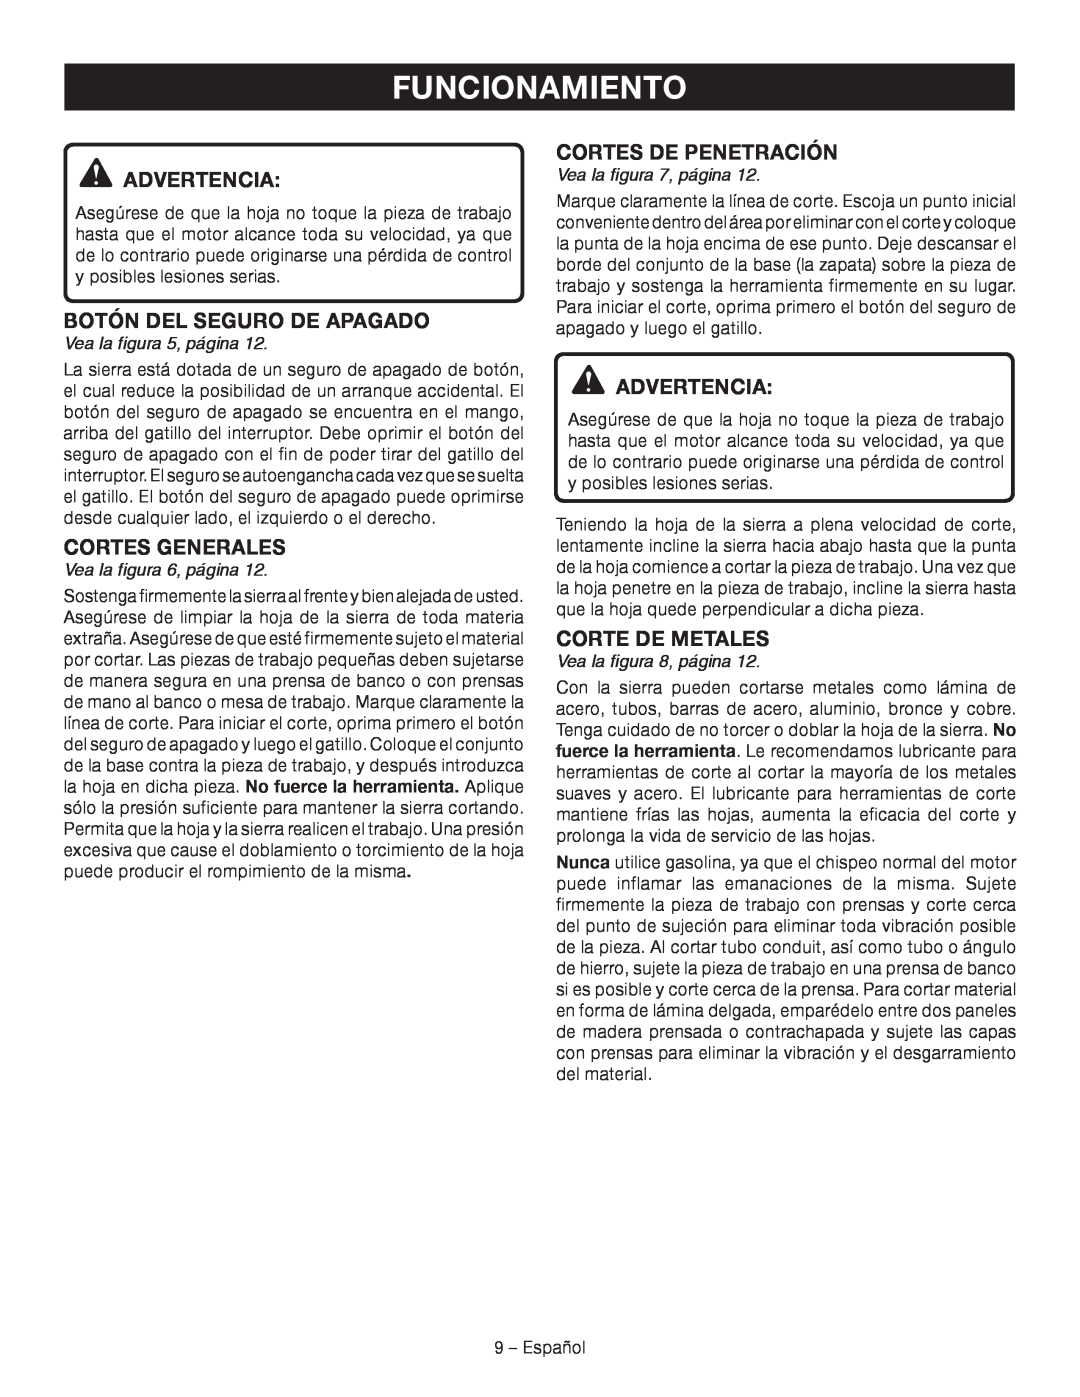 Ryobi P514 Cortes Generales, Cortes De Penetración, Corte De Metales, Funcionamiento, Advertencia, Vea la figura 5, página 